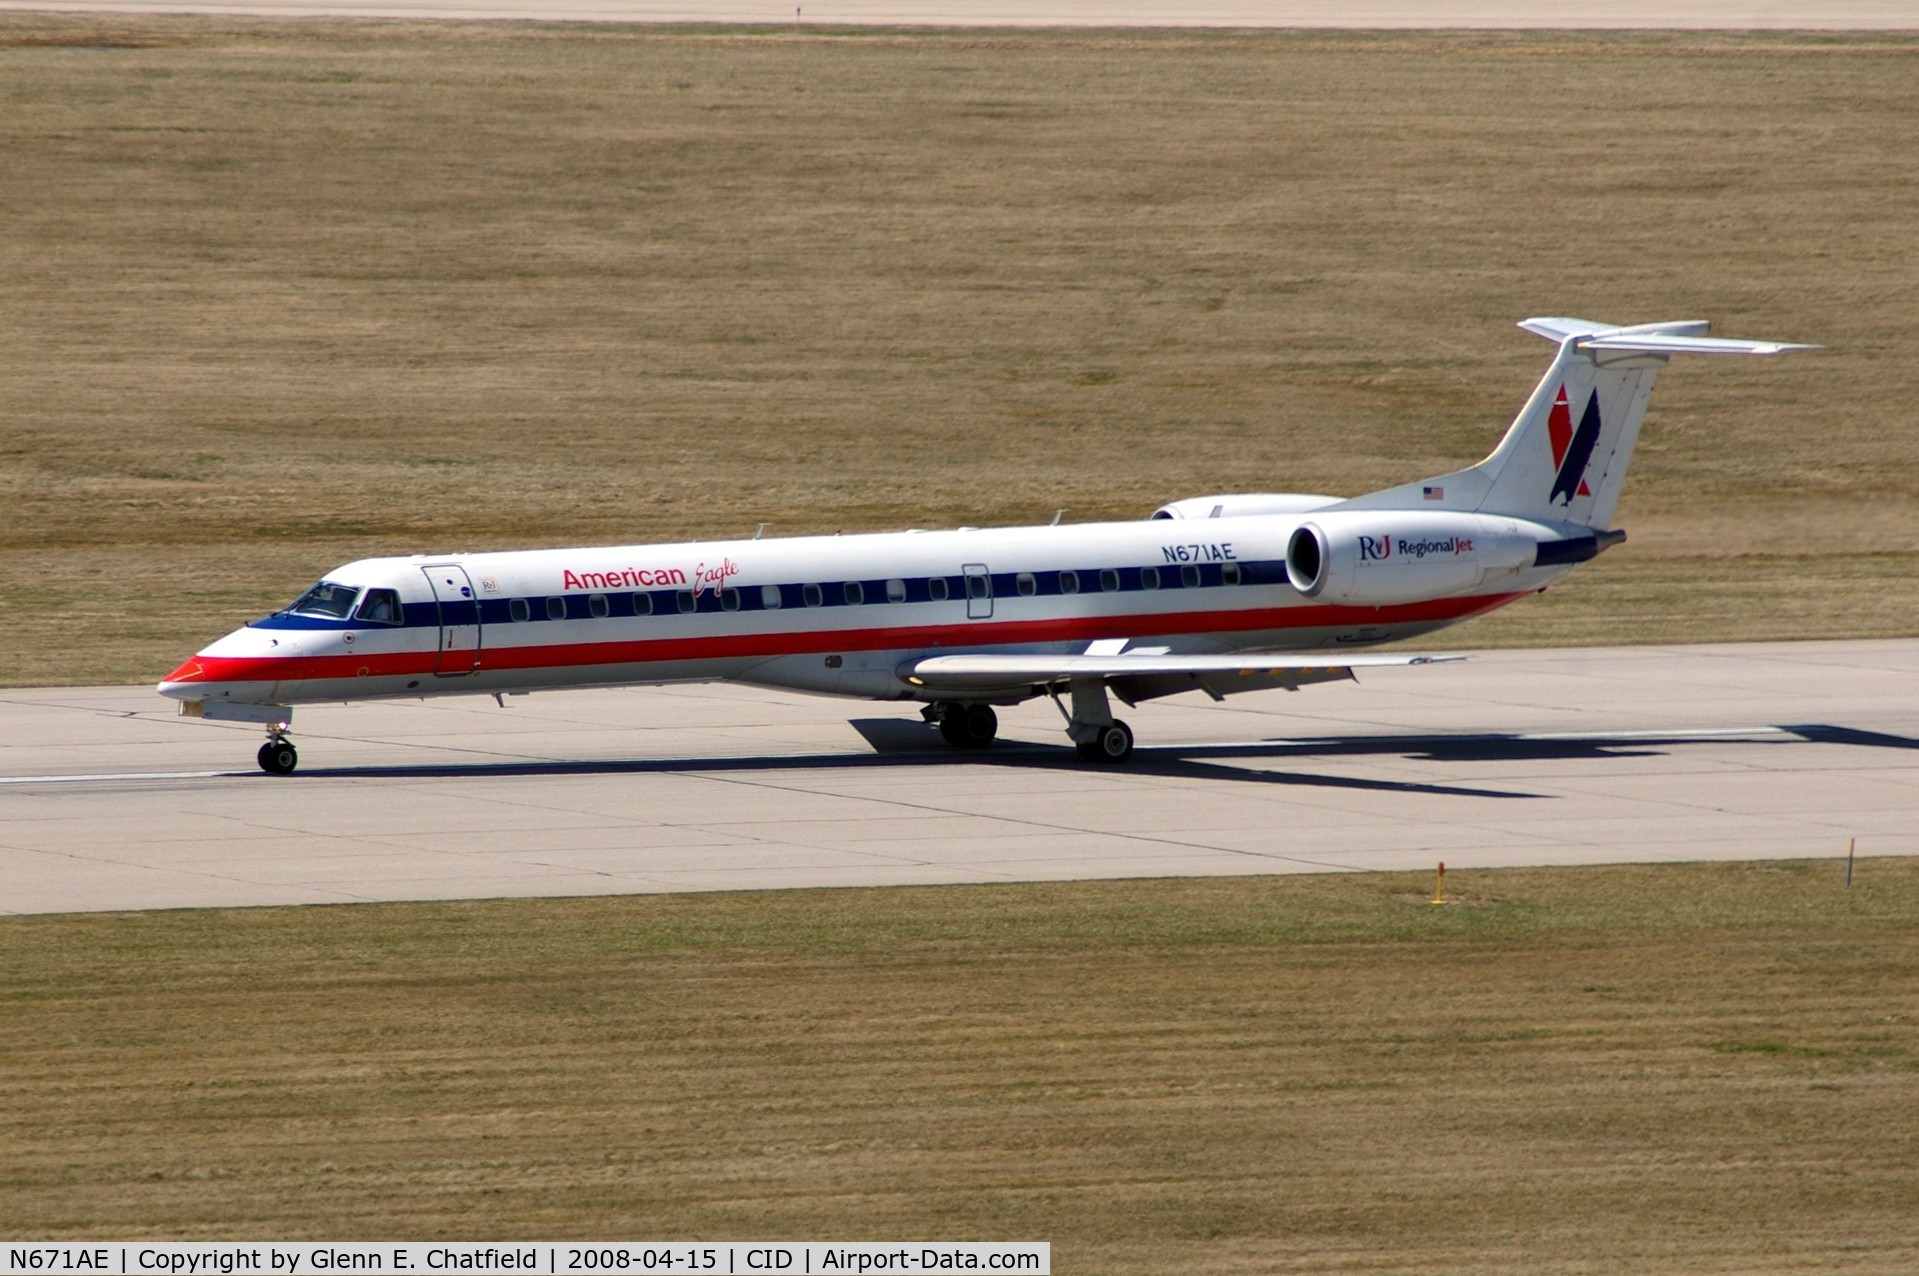 N671AE, 2004 Embraer ERJ-145LR (EMB-145LR) C/N 145793, Rolling out after landing runway 13